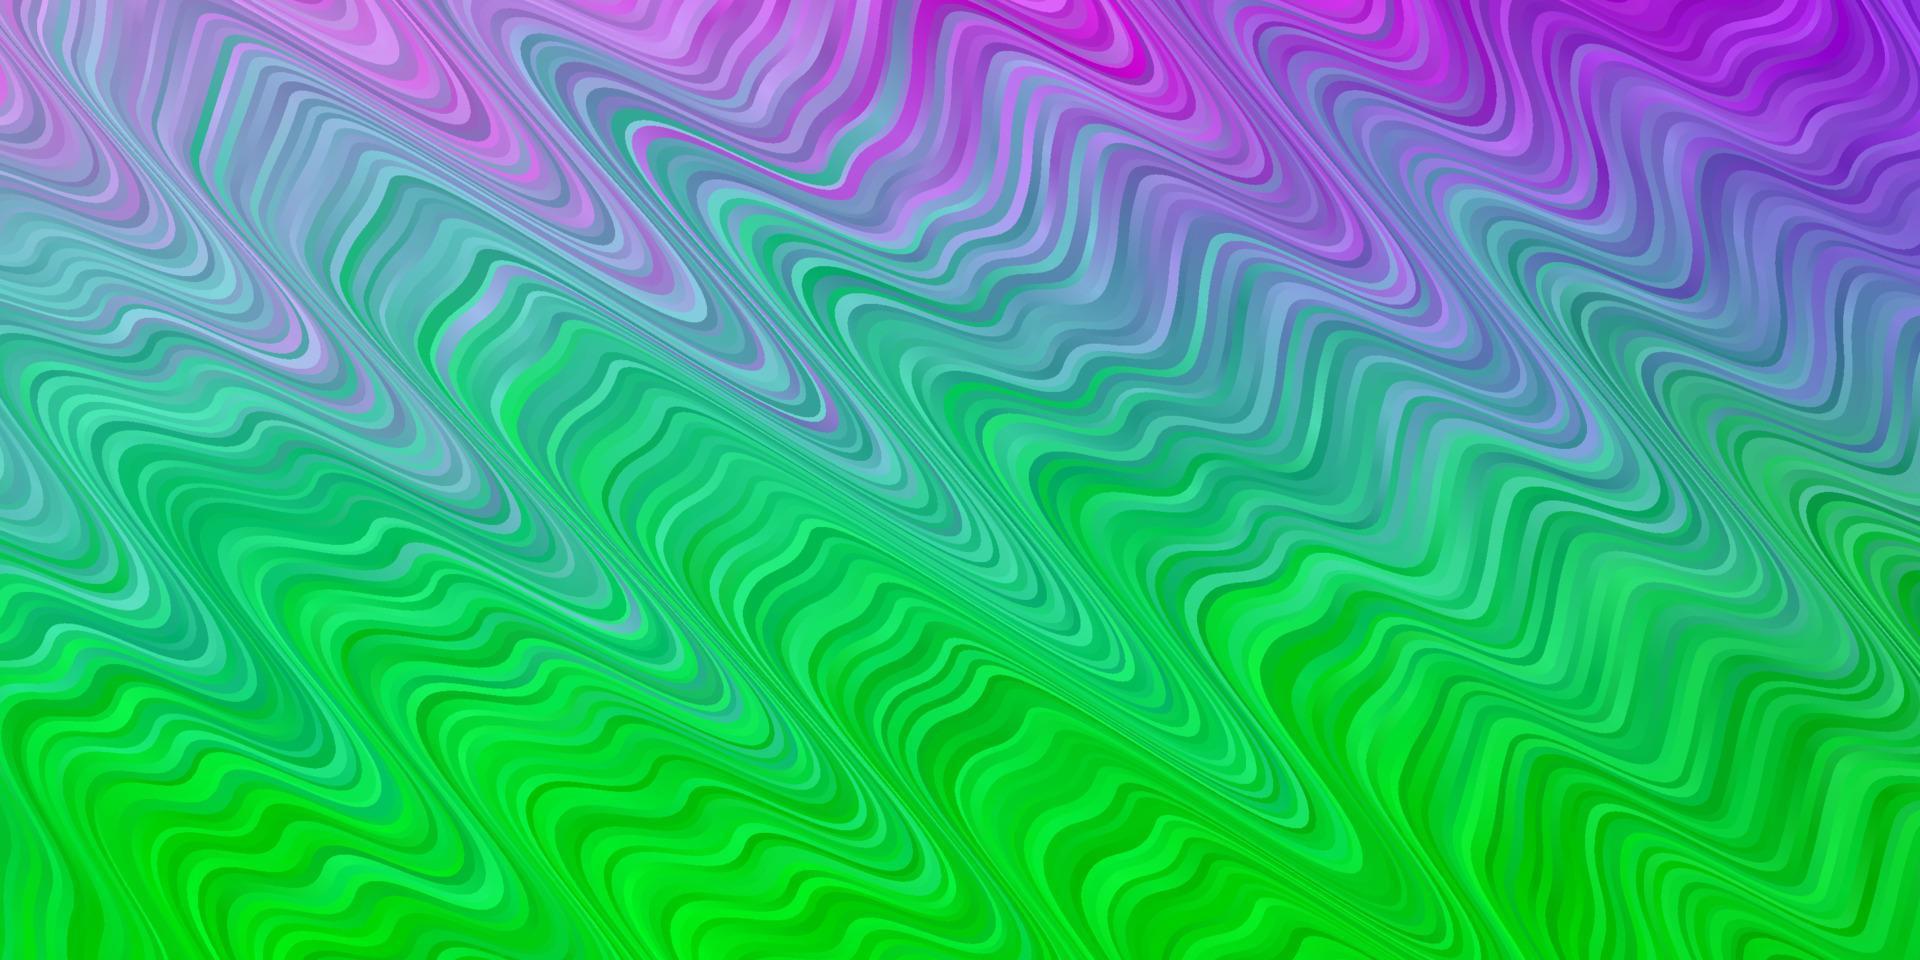 ljusrosa, grön vektorbakgrund med bågar. vektor